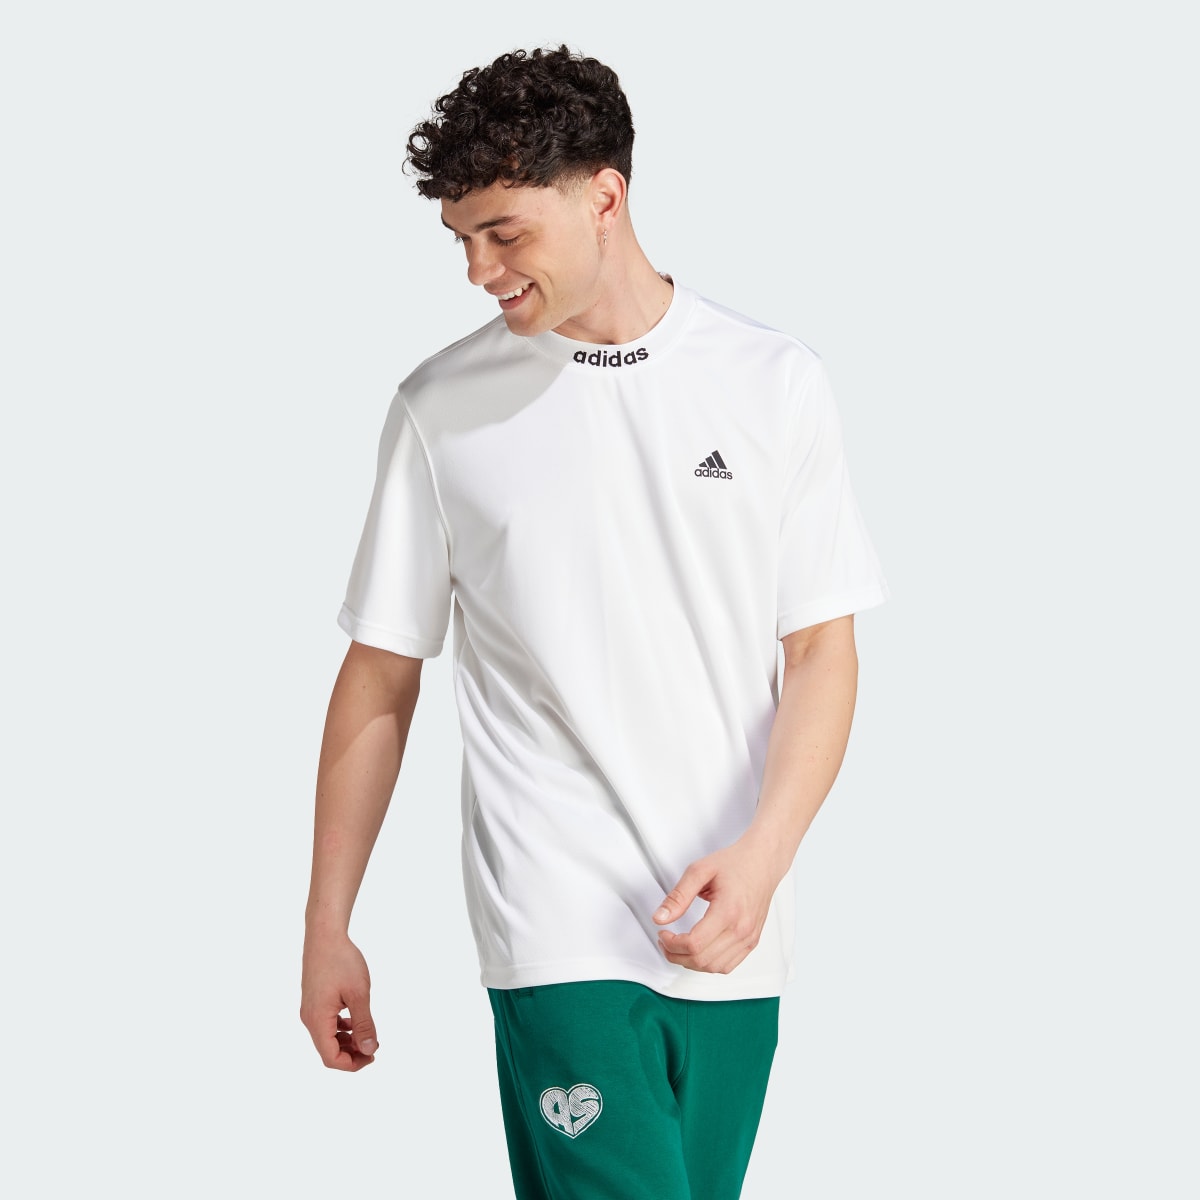 Adidas Koszulka Mesh-Back. 4